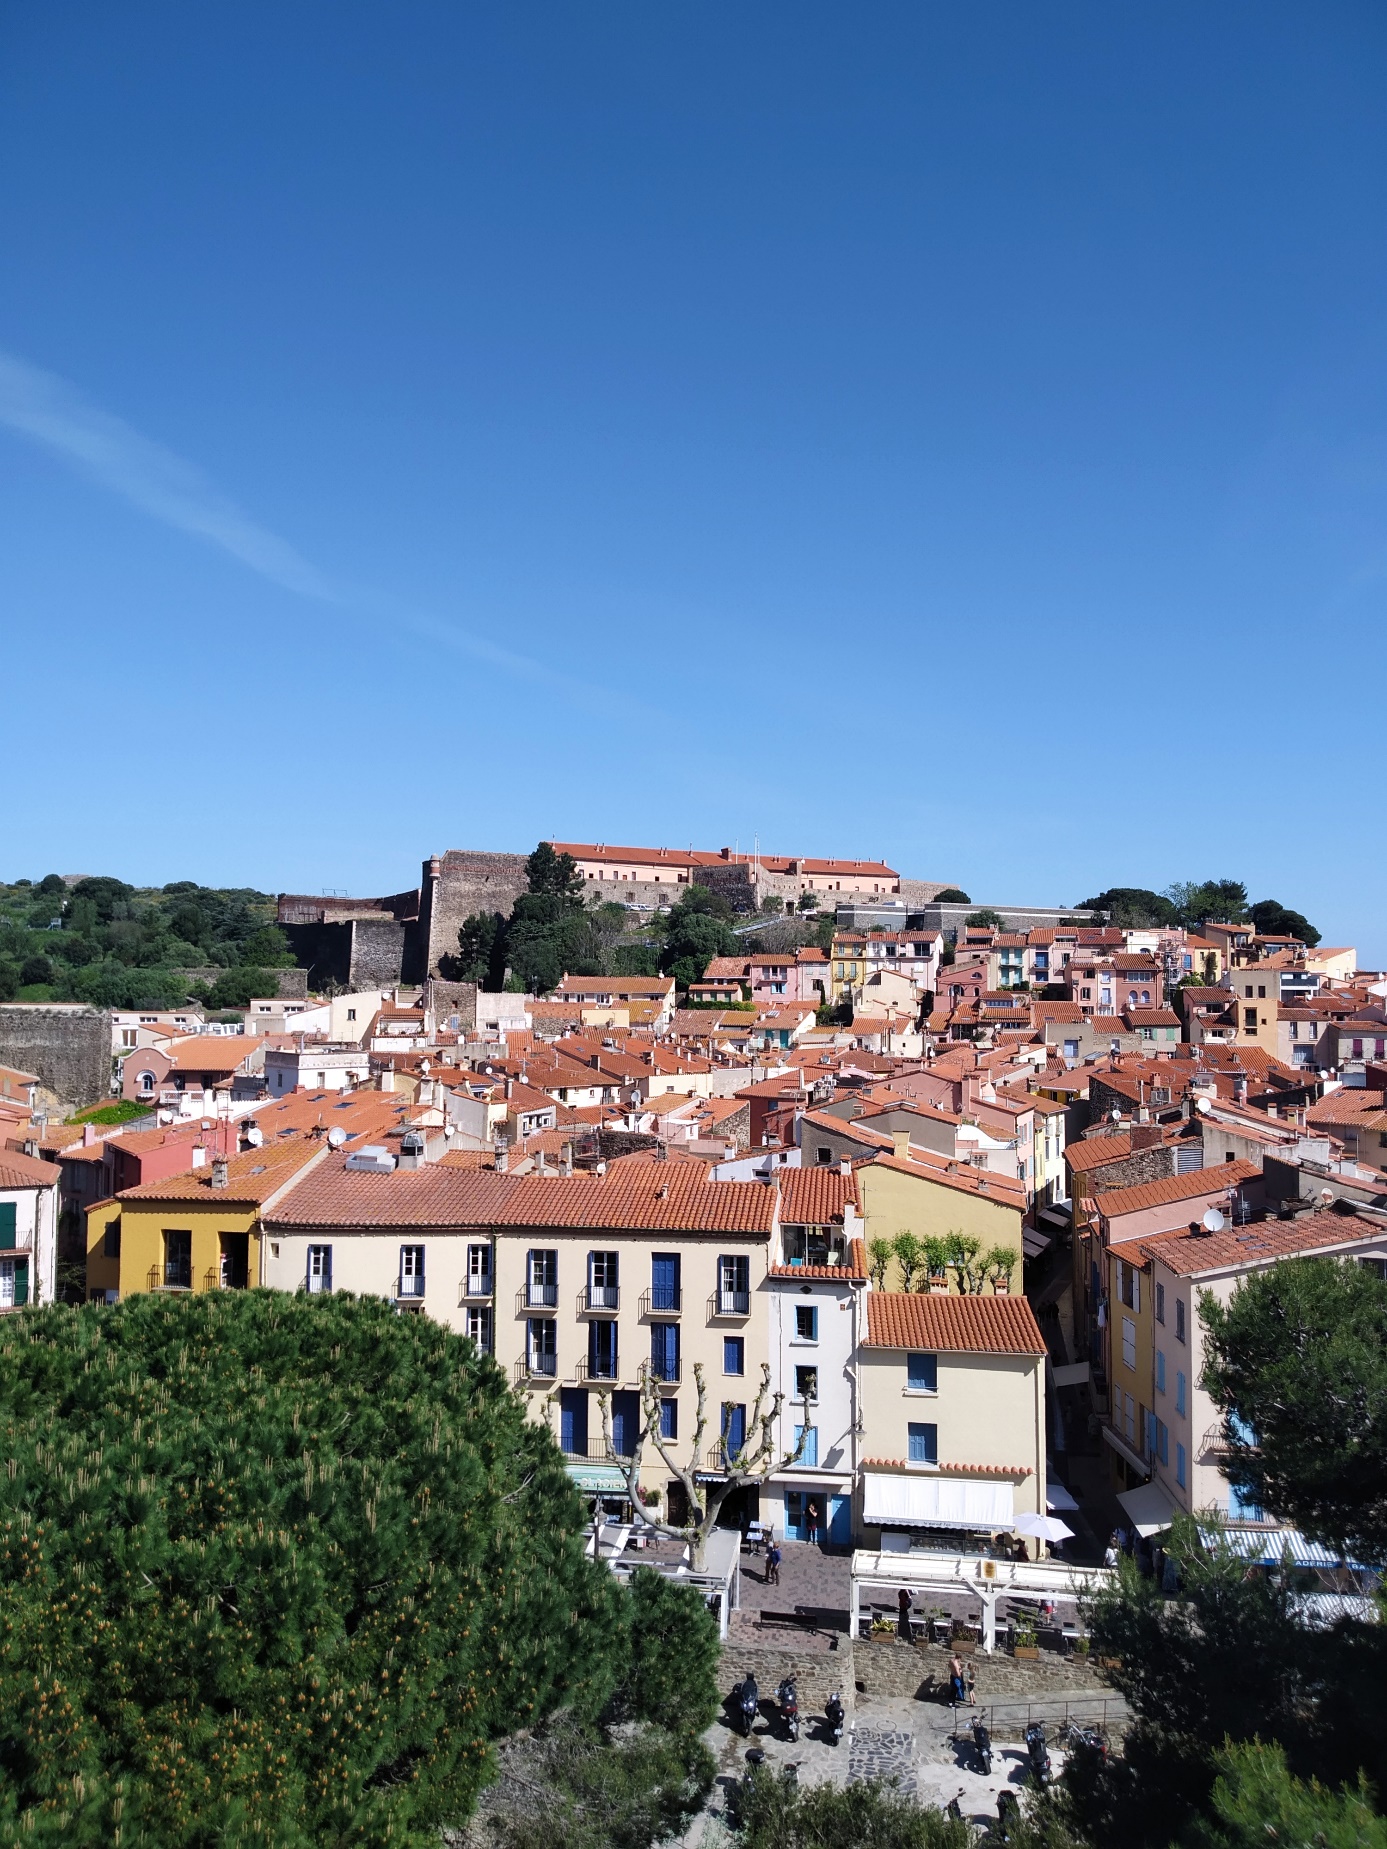 Pháo đài Collioure, một công trình và nghìn năm lịch sử - 2